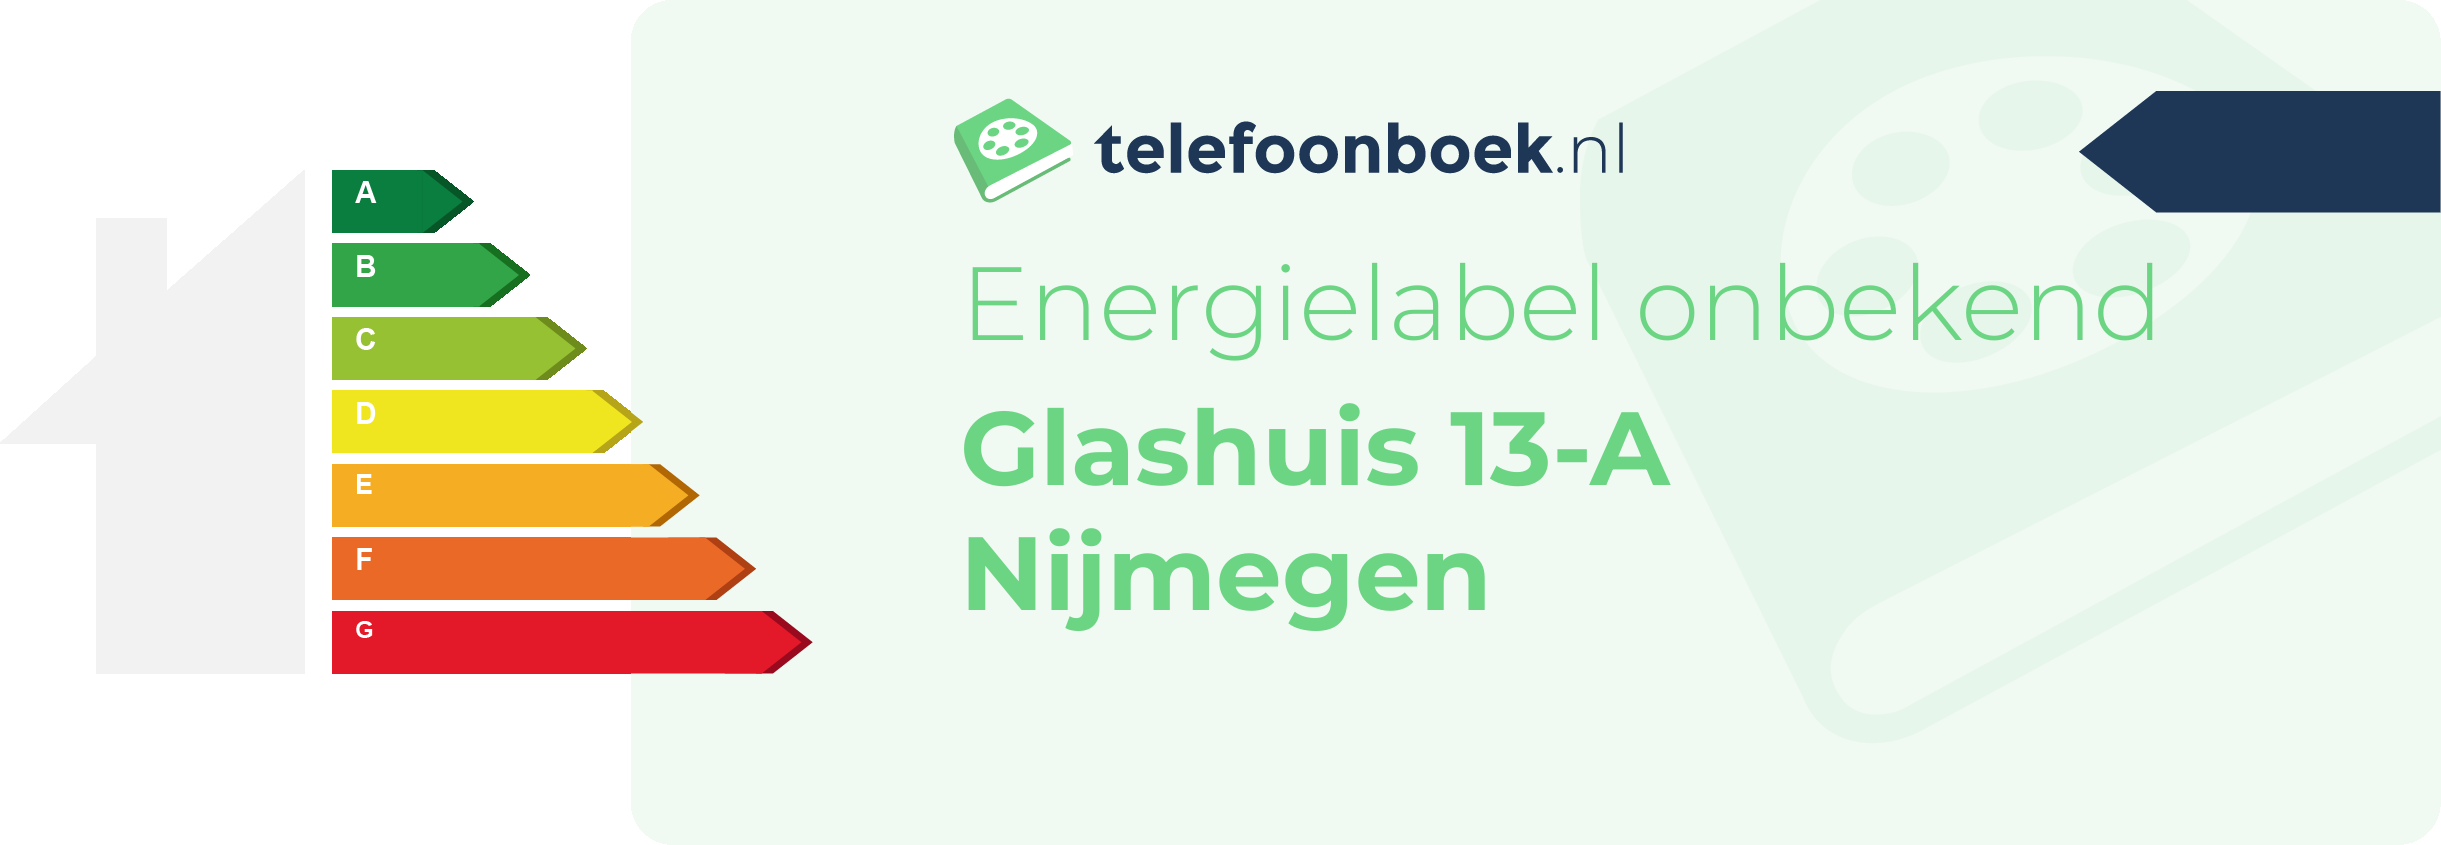 Energielabel Glashuis 13-A Nijmegen